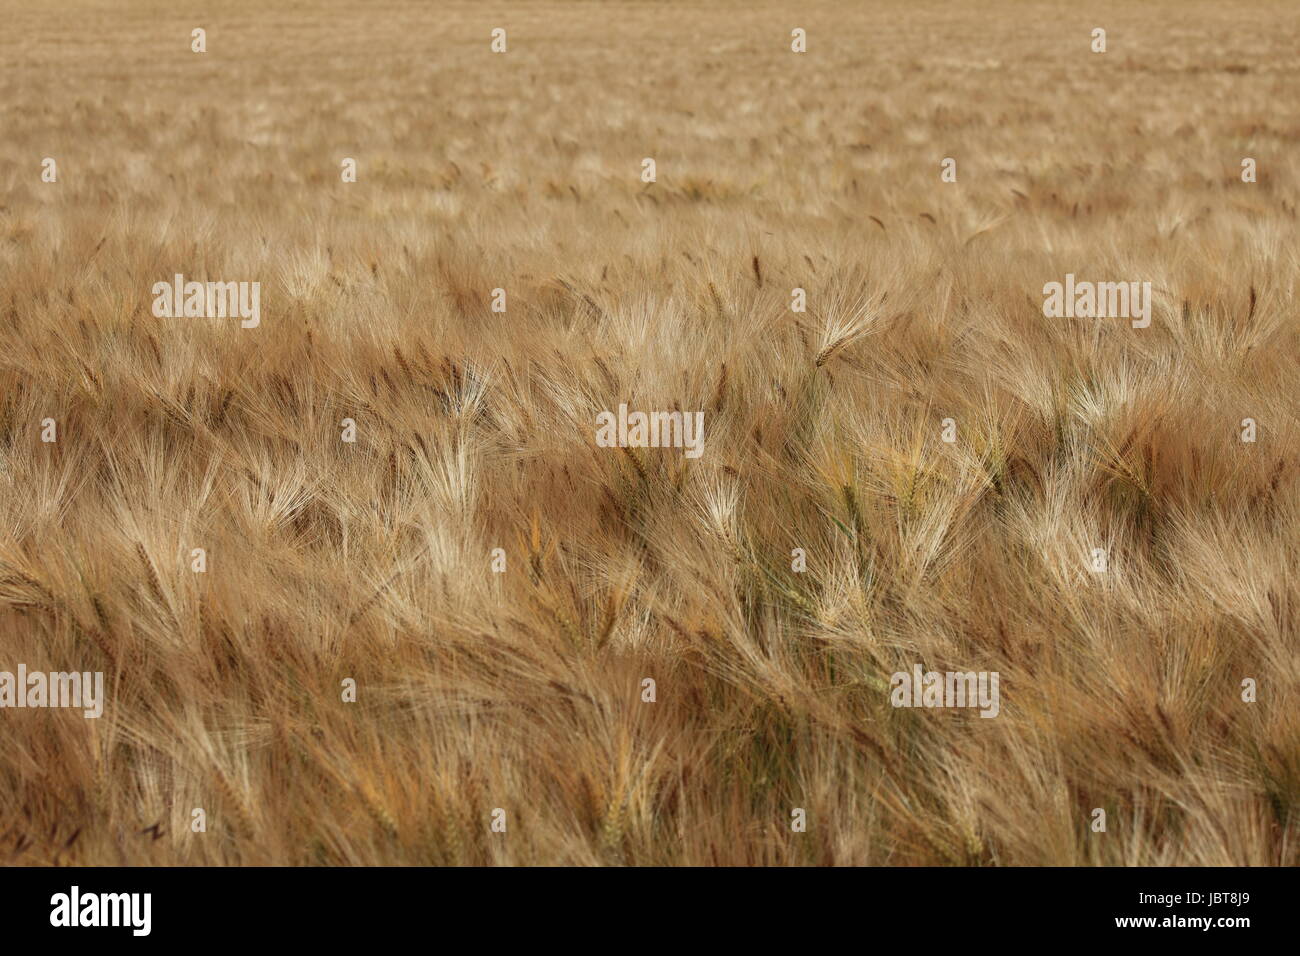 field grain field Stock Photo